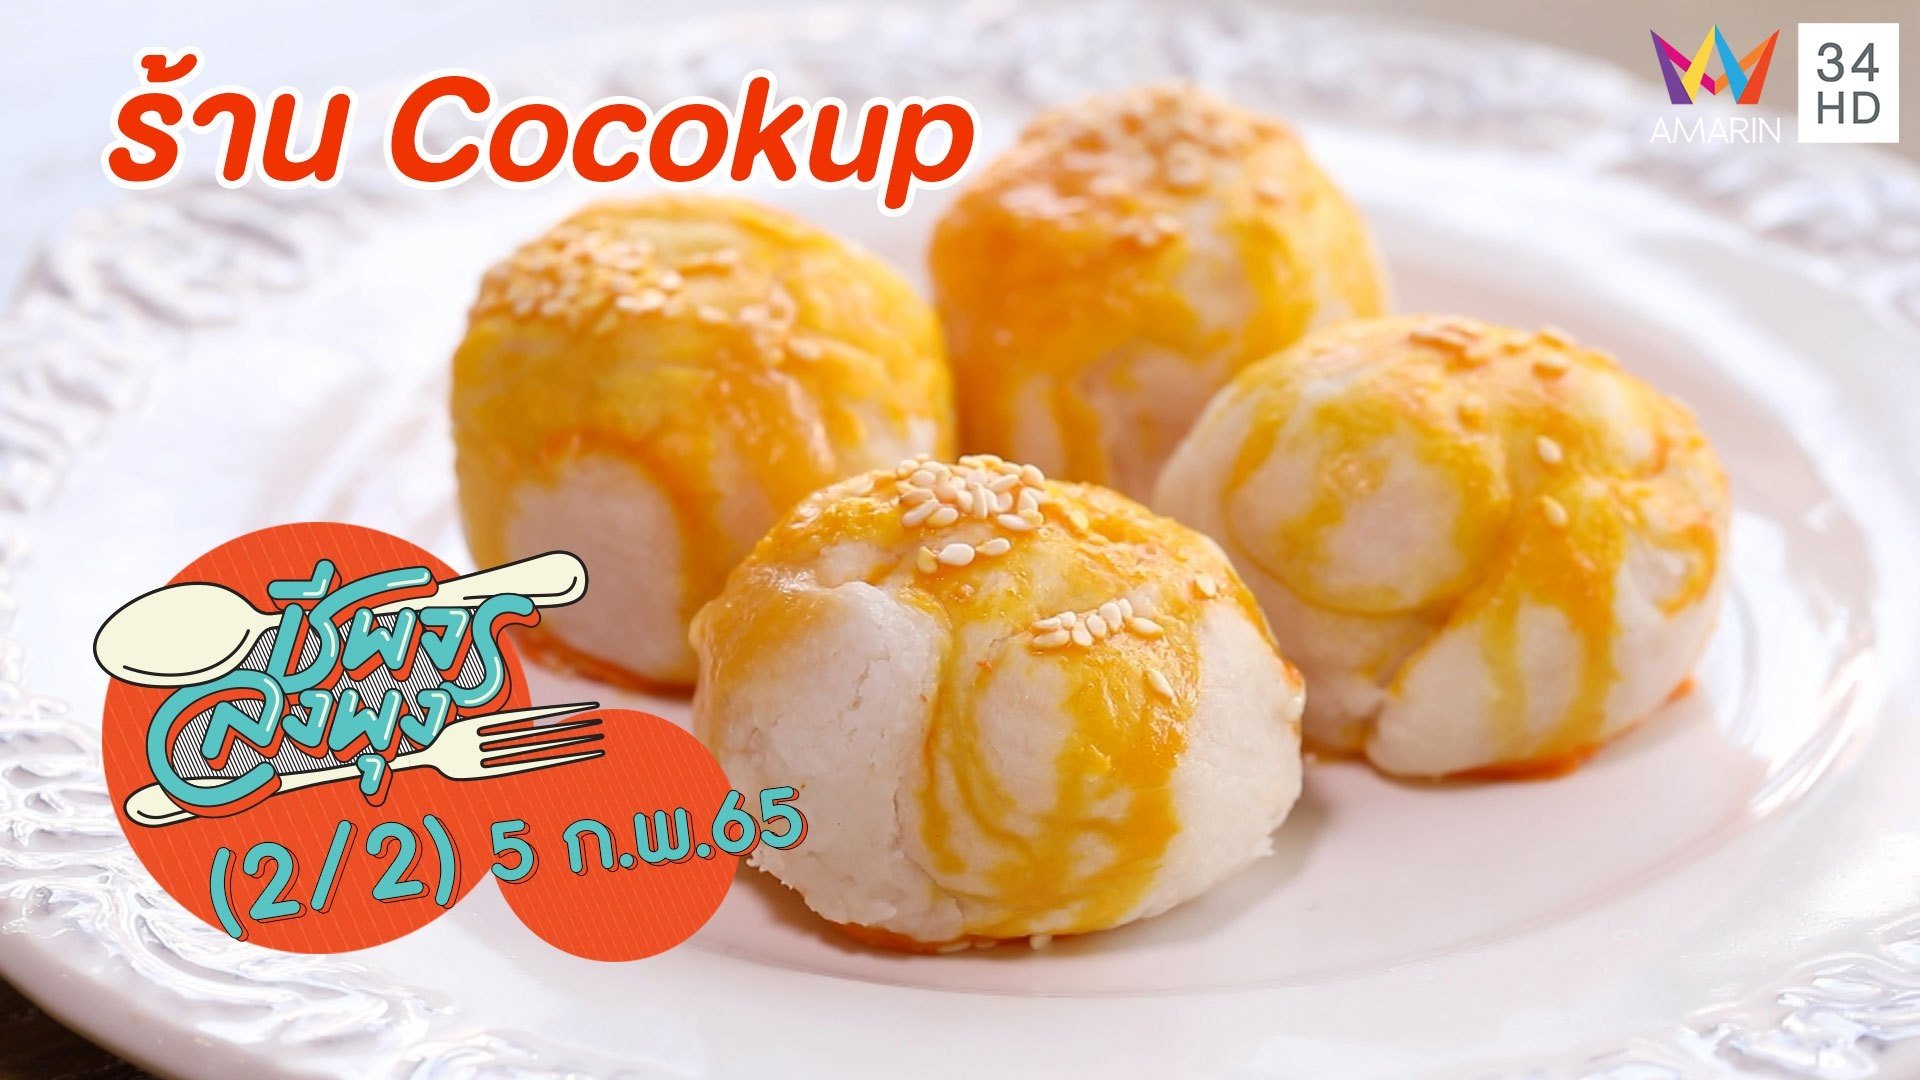 ขนมเปี๊ยะลาวา แป้งกรอบร่วนไส้ไข่เค็ม อร่อยลงตัว @ ร้าน Cocokup | ชีพจรลงพุง | 5 ก.พ. 65 (2/2) | AMARIN TVHD34